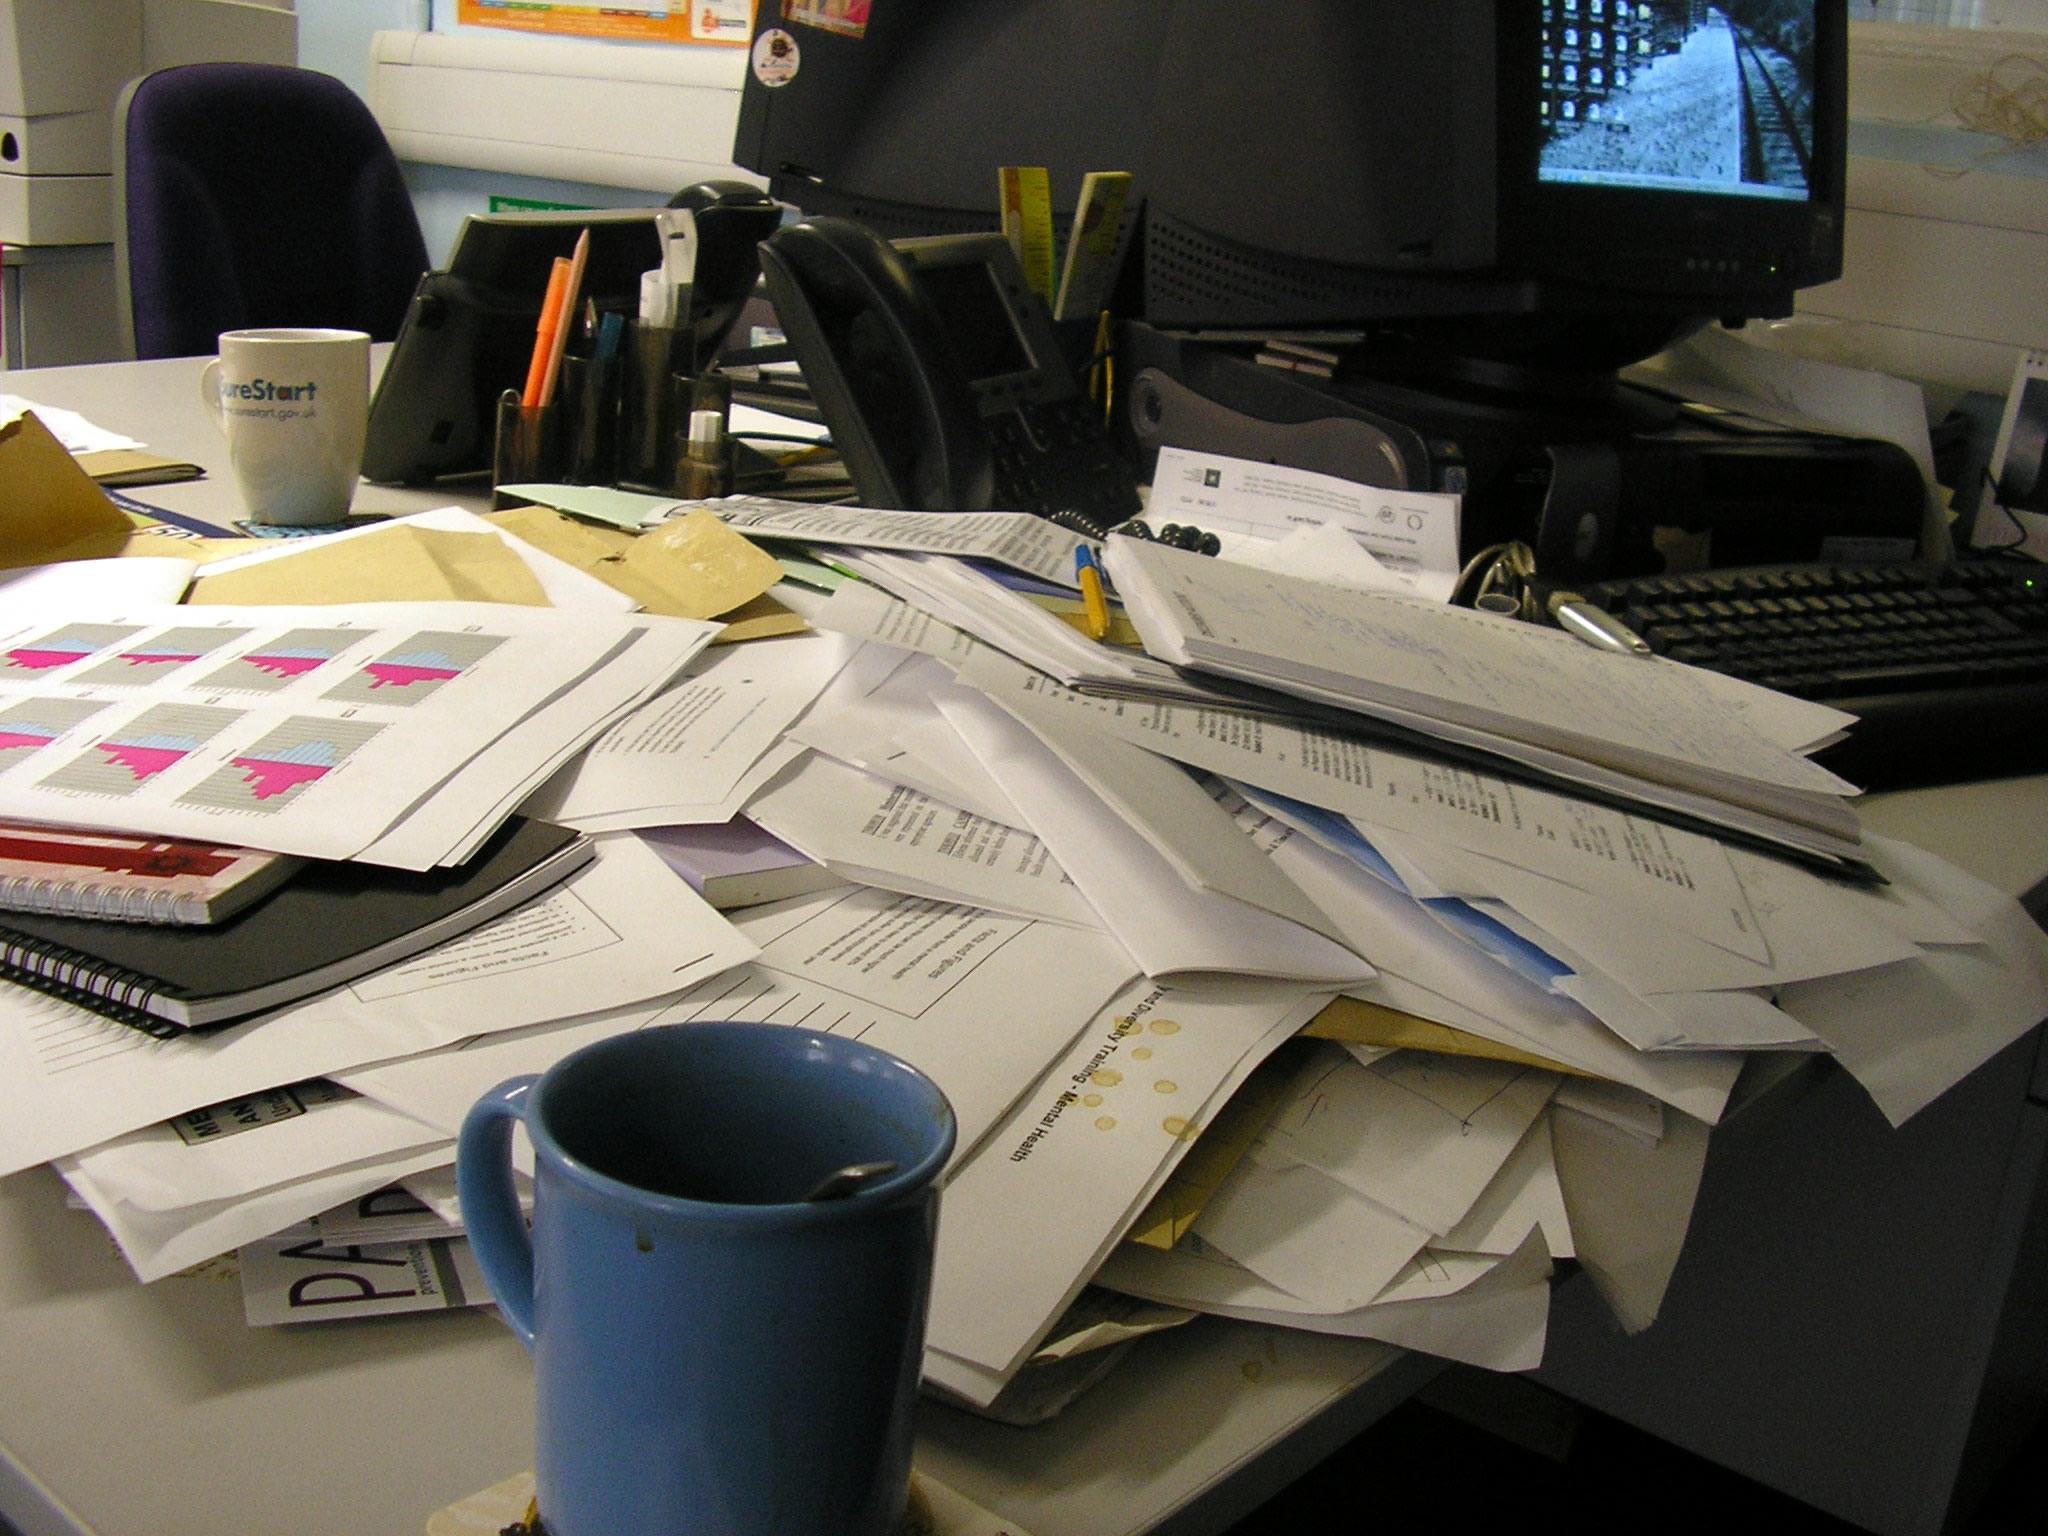 Много бумаг на столе. Бумаги на столе. Стол заваленный бумагами. Письменный стол заваленный бумагами. Письменный стол заваленный бумагами в офисе.